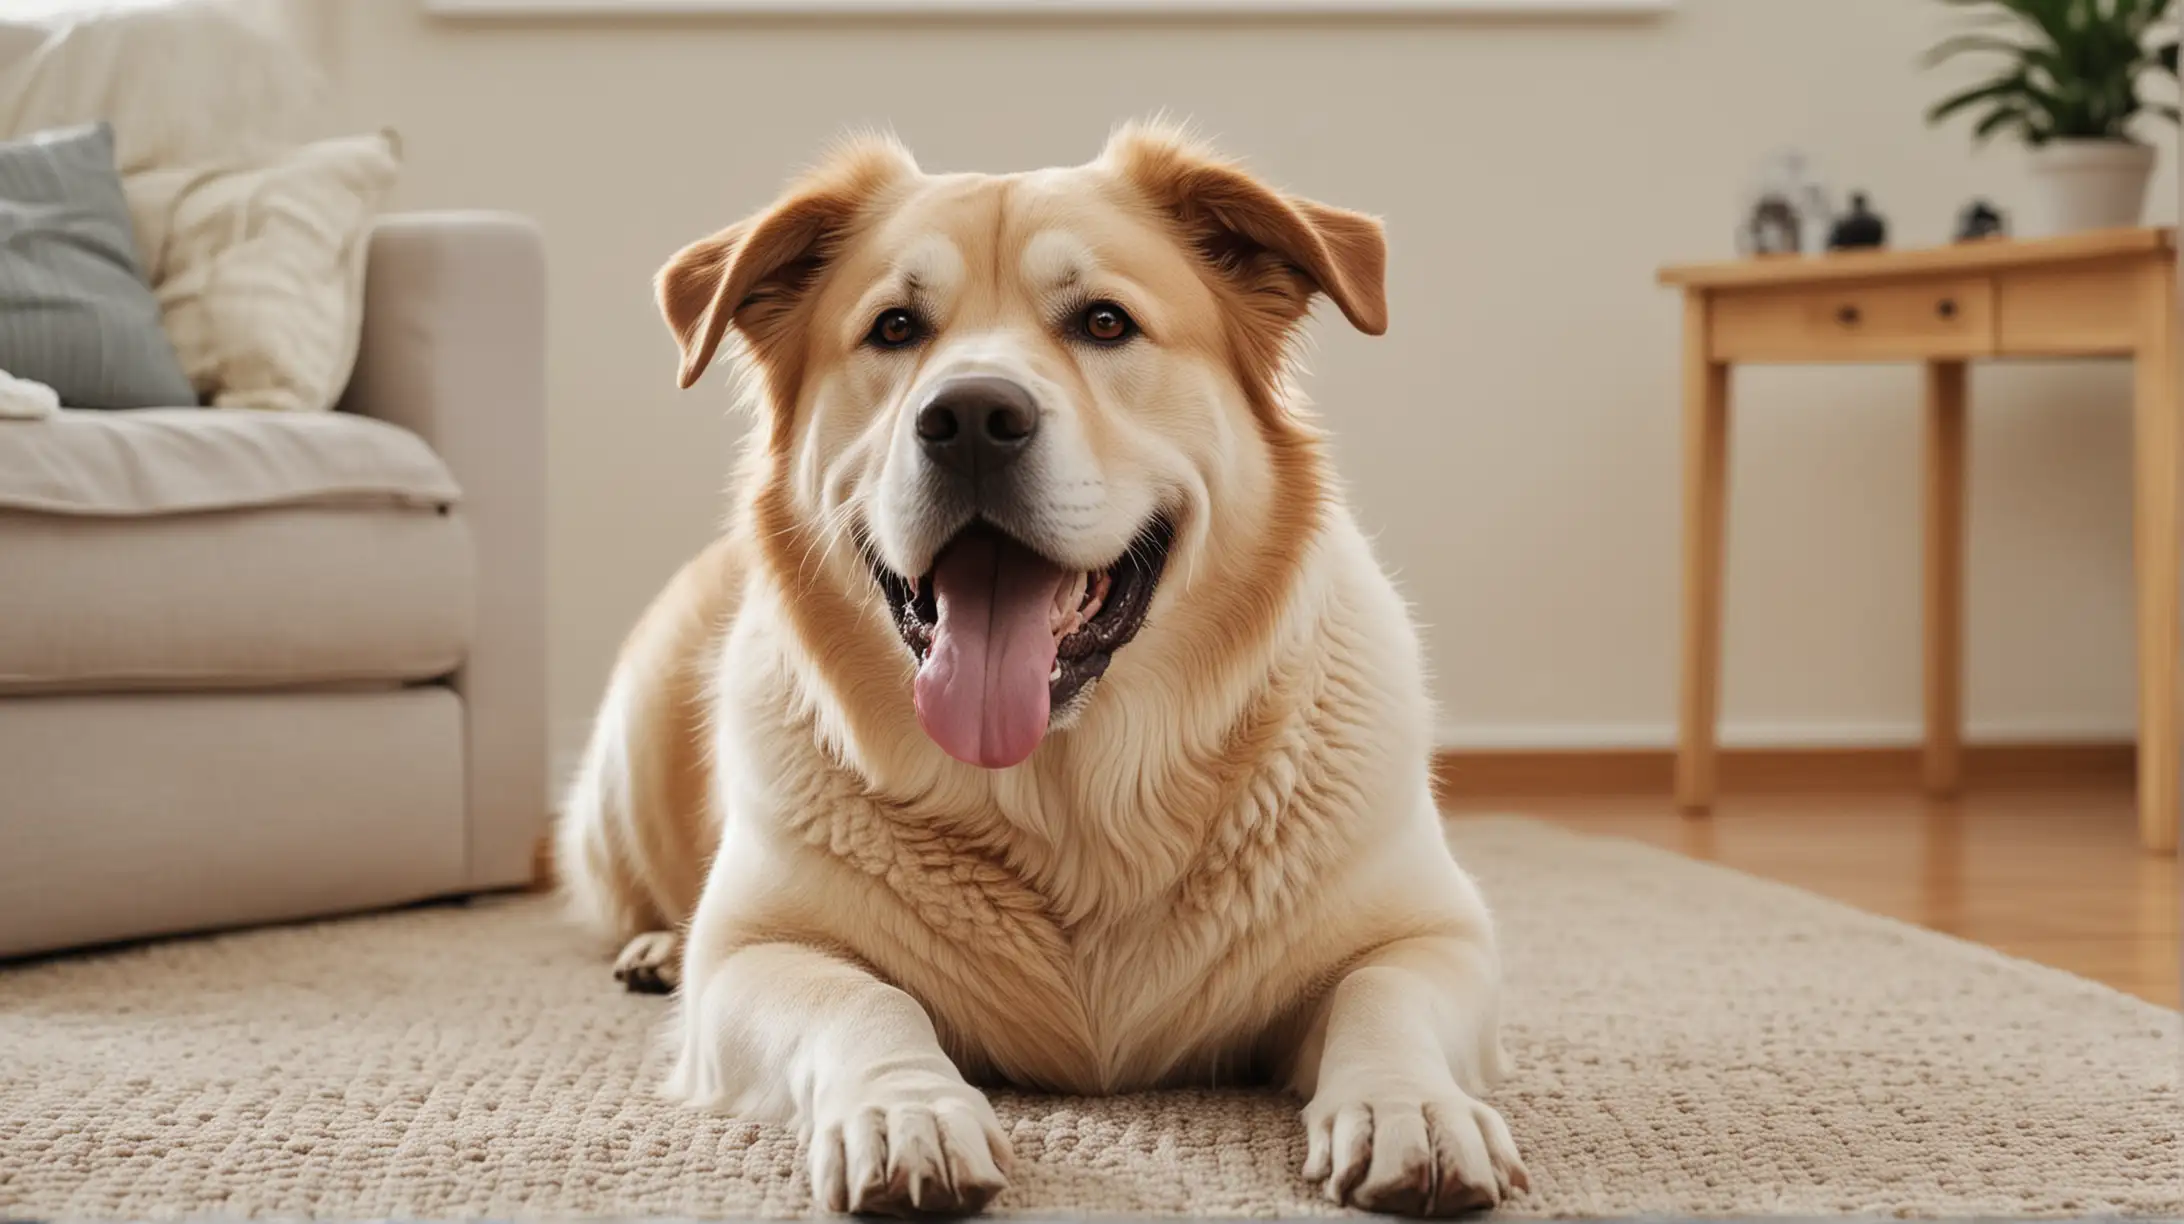 Happy Large Dog Enjoying Home Life in Australia